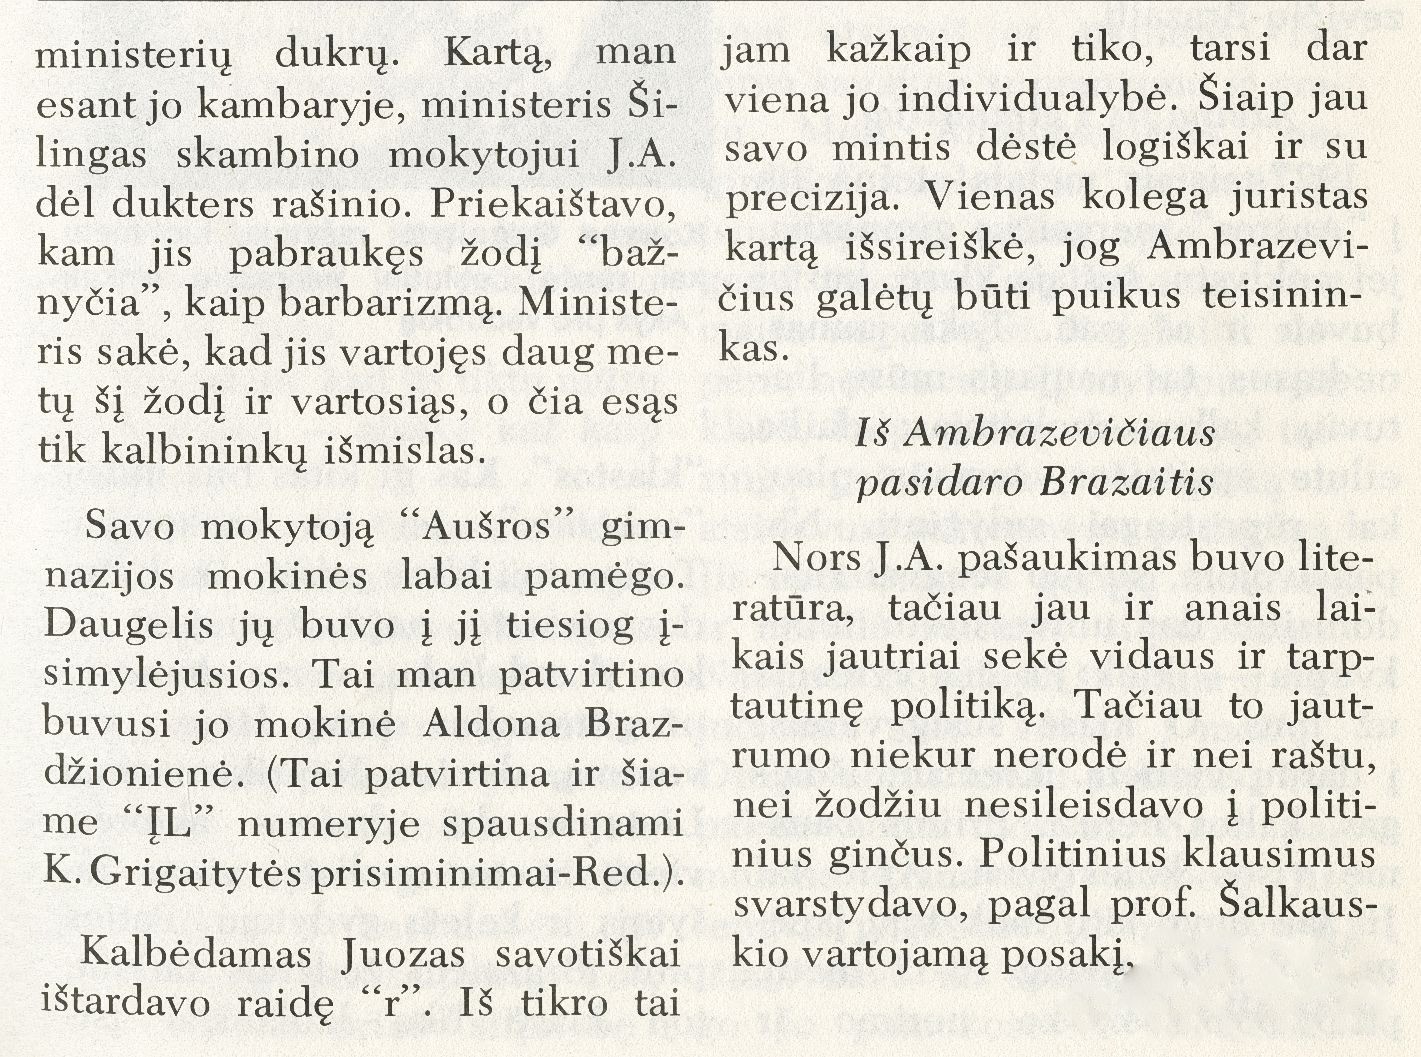 Esi herojus, tapk šventuoju: studentiški prisiminimai apie Juozą Ambrazevičių-Brazaitį / Vincas Kazlauskas // Į laisvę. – 1975, Nr. 65, p. 84–87, 96.